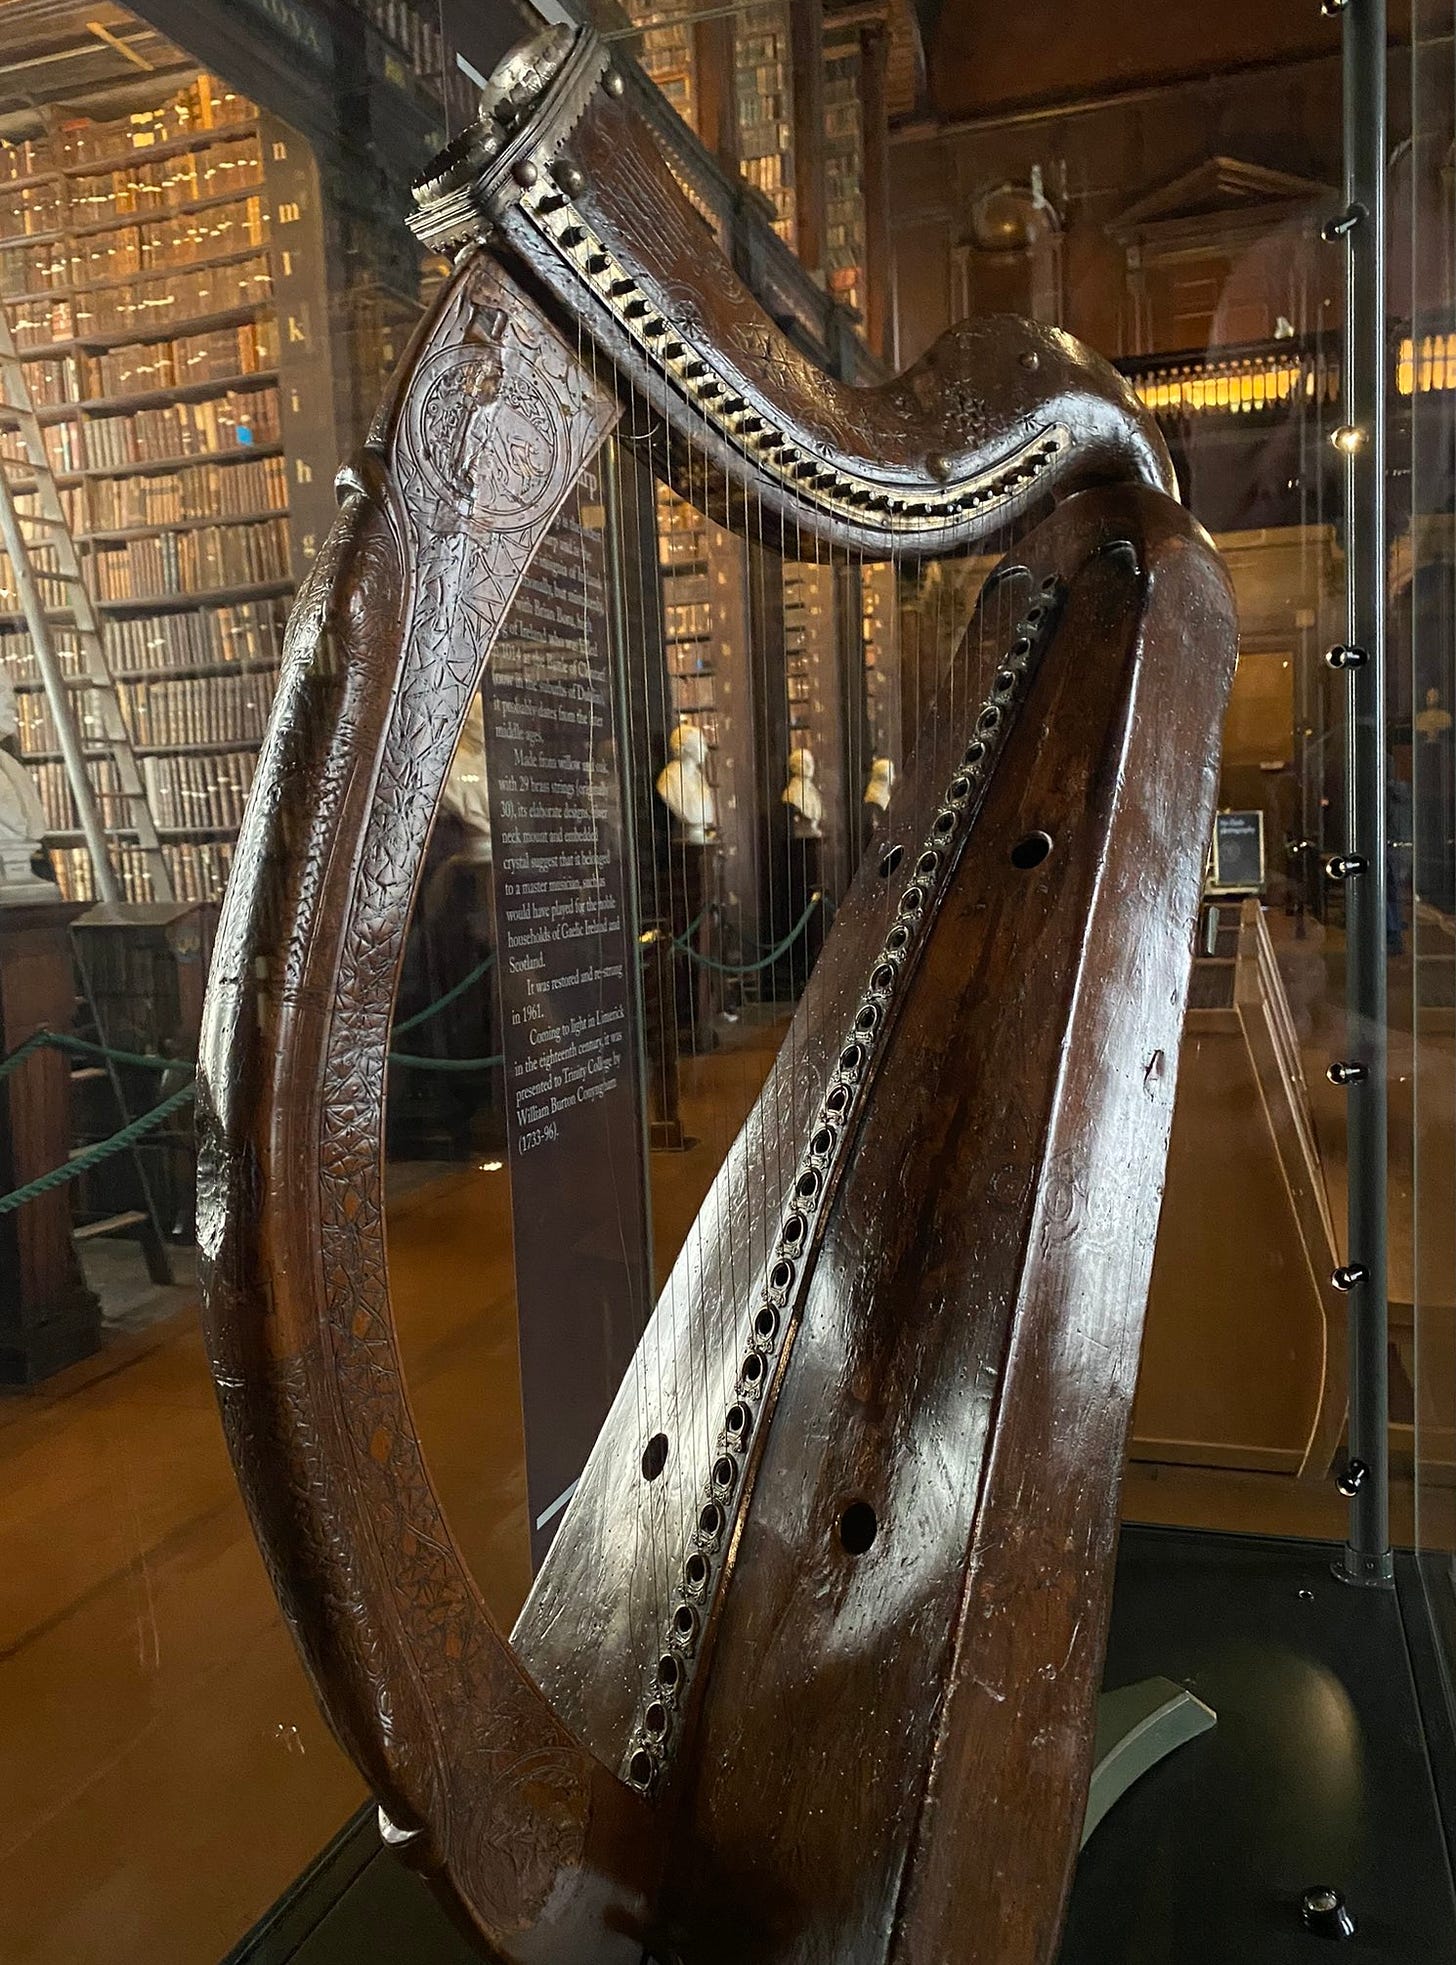 The Trinity College Harp